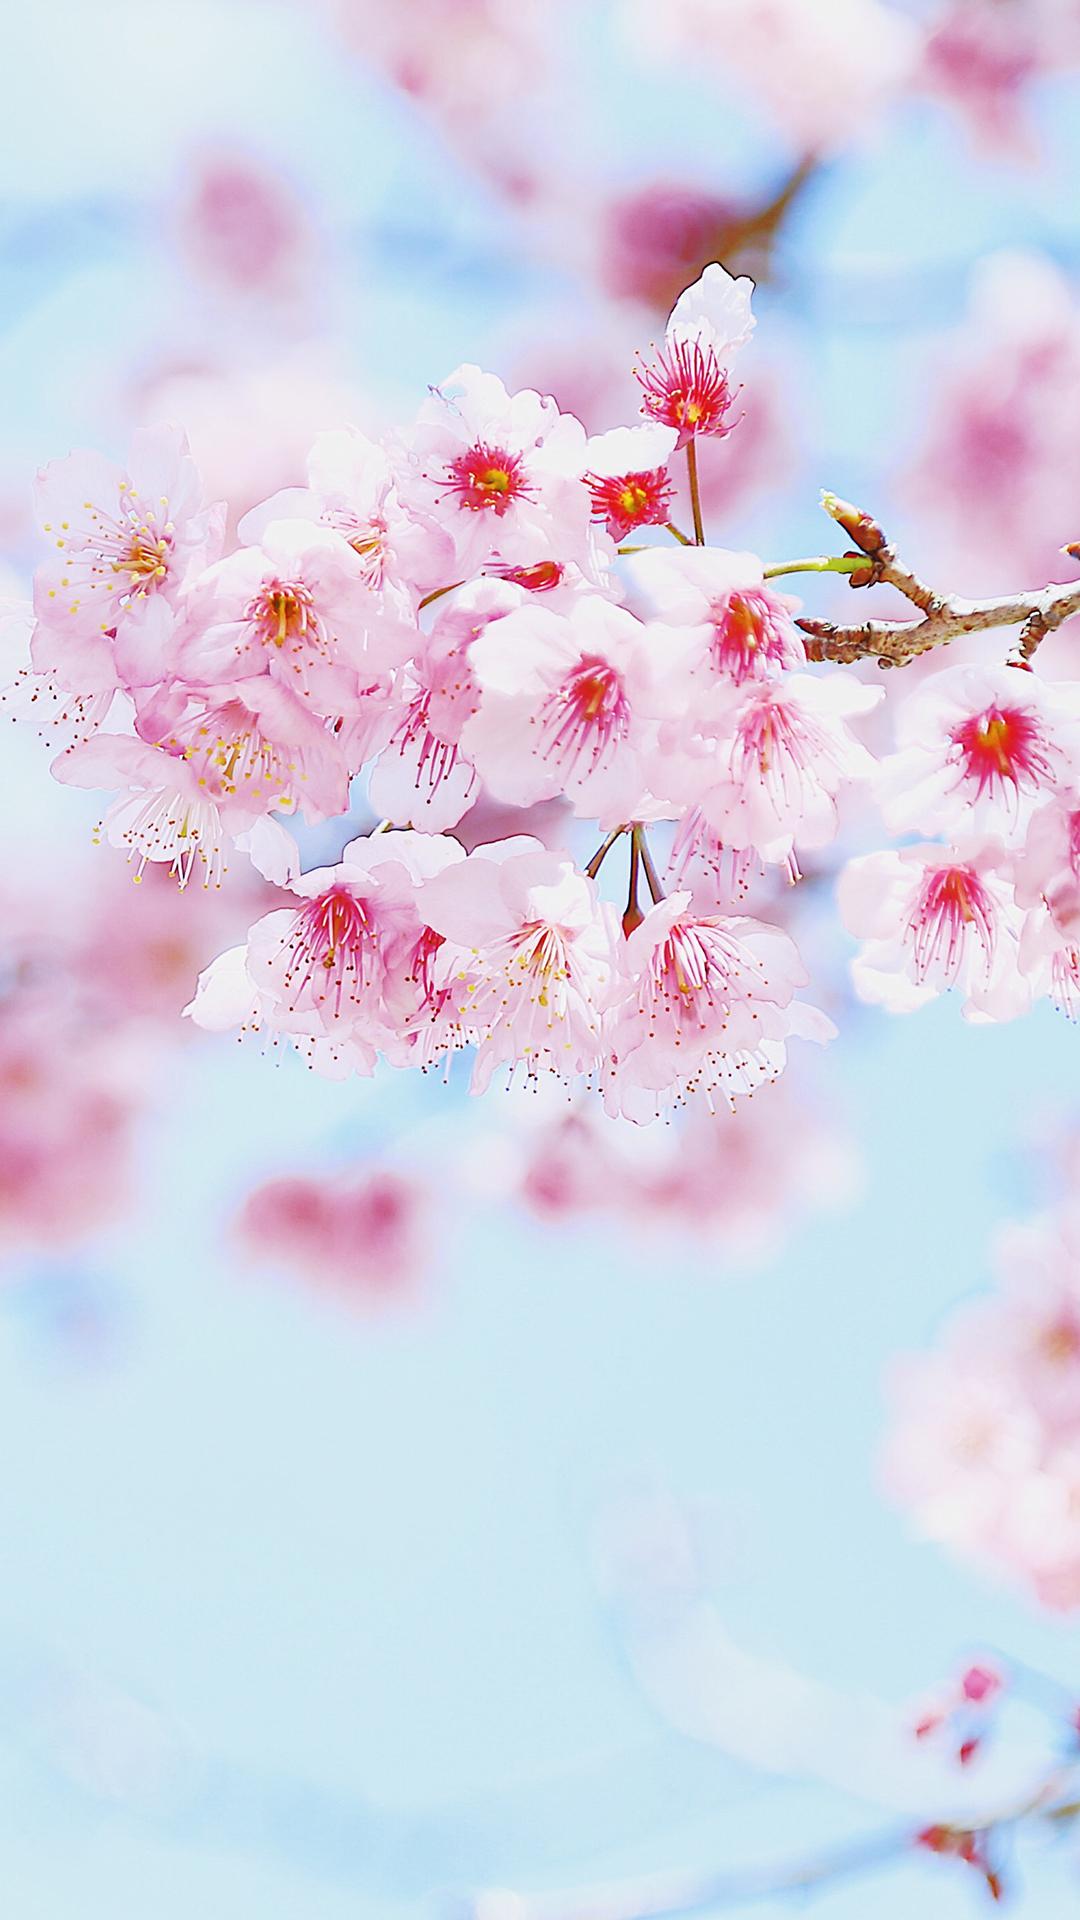 每到樱花盛开时节很多人都会前往 去欣赏美丽的樱花胜景